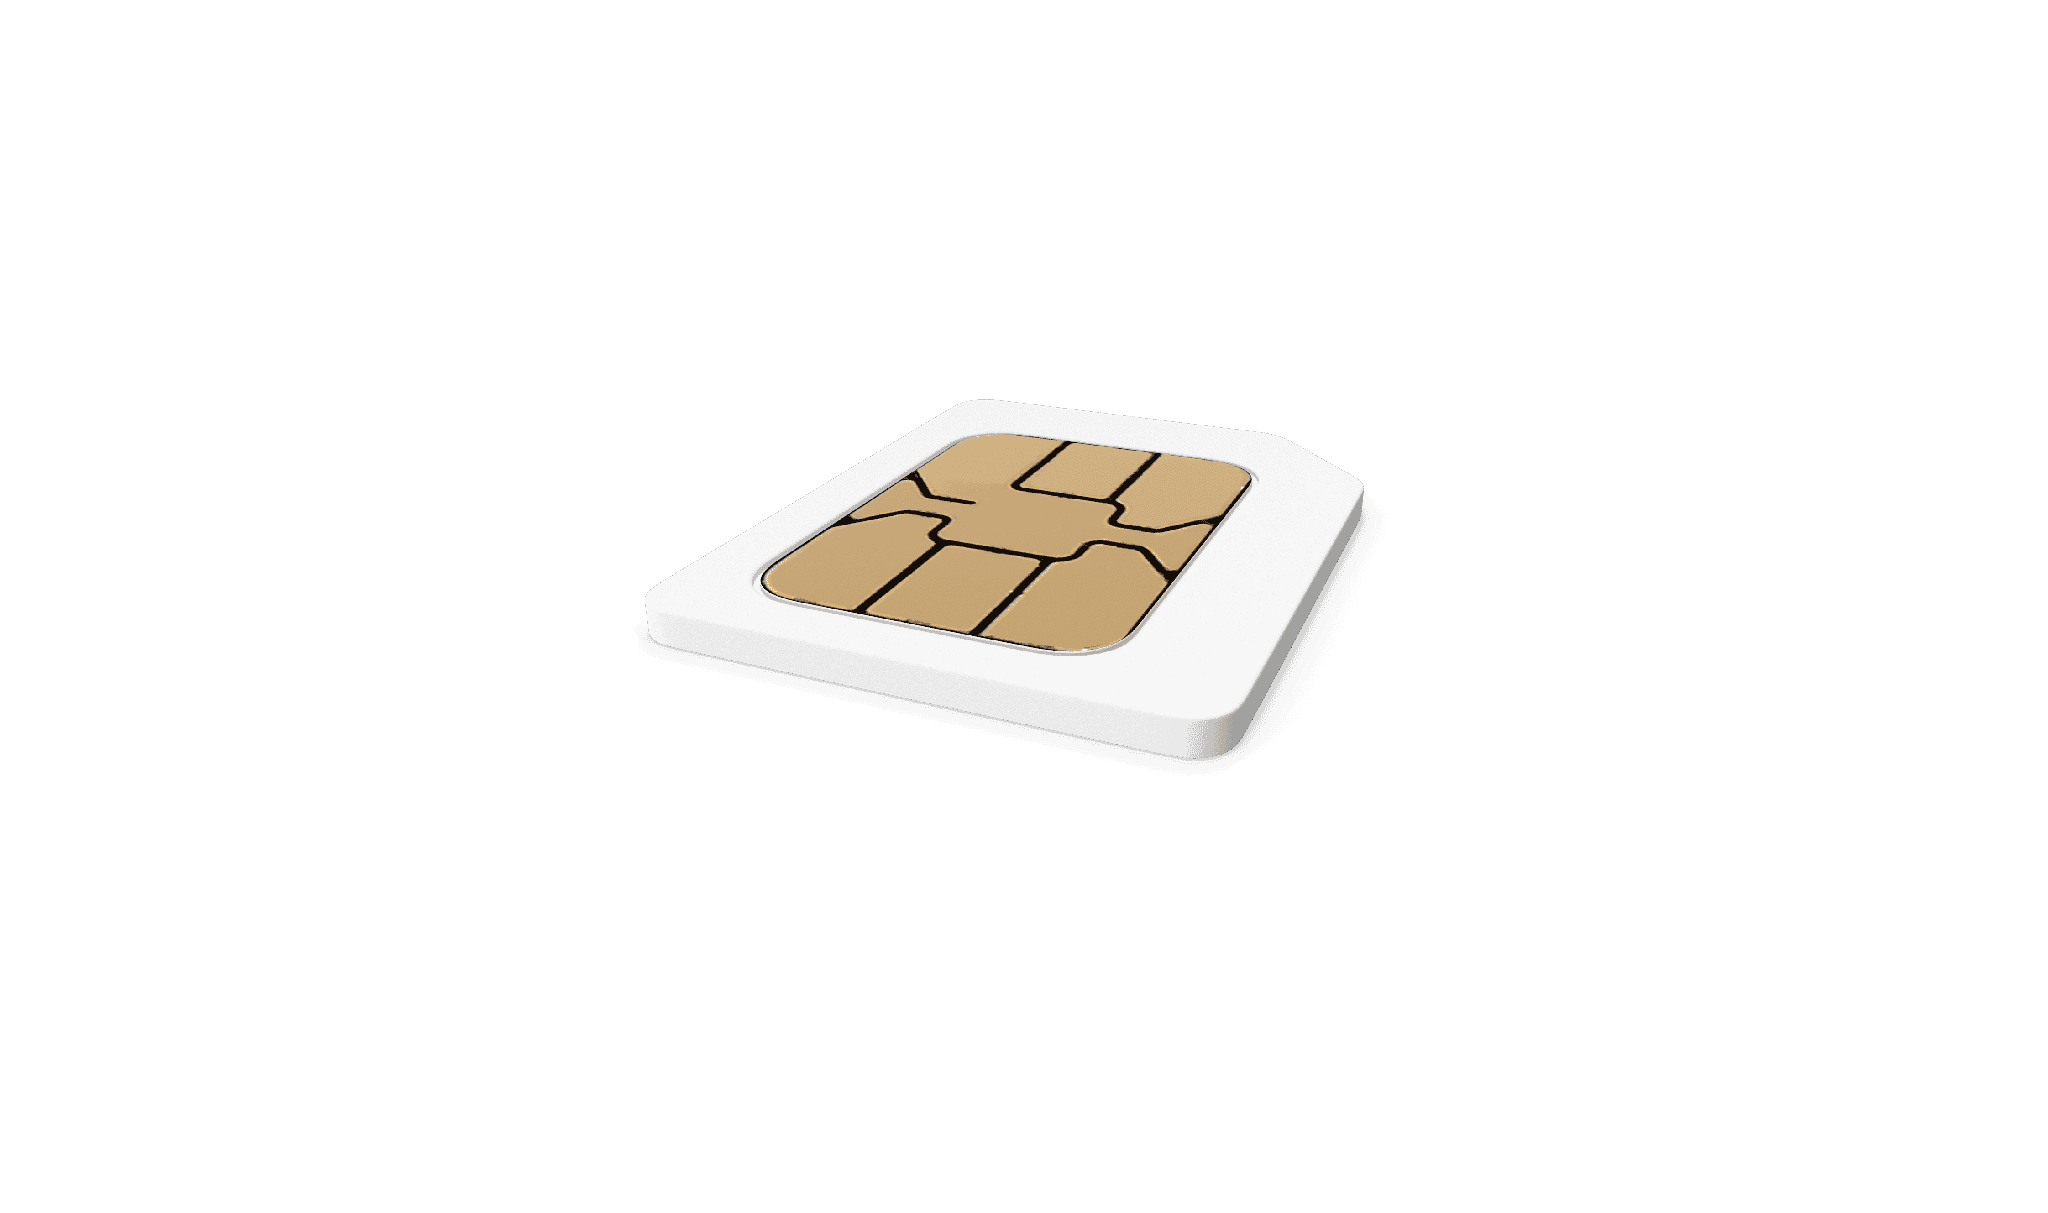 Die 3-in-1 SIM ist die bekannteste SIM-Karte (Mini, Micro, Nano) und wird meistens in Consumer Electronic wie Smartphones, Tablets etc. verwendet.